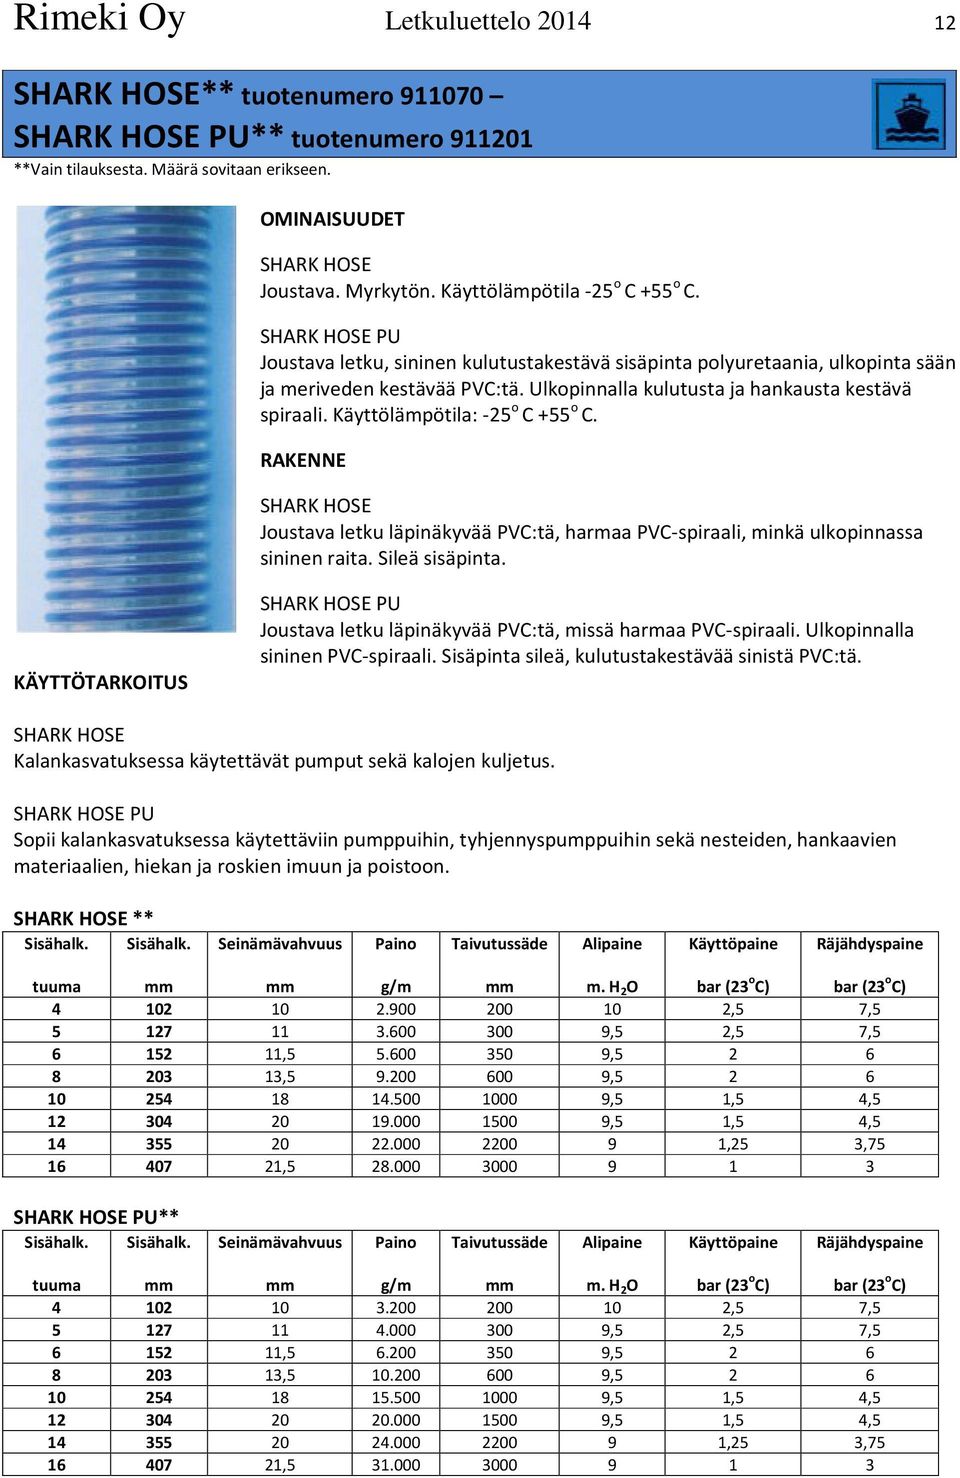 Ulkopinnalla kulutusta ja hankausta kestävä spiraali. Käyttölämpötila: -25 o C +55 o C. SHARK HOSE Joustava letku läpinäkyvää PVC:tä, harmaa PVC-spiraali, minkä ulkopinnassa sininen raita.